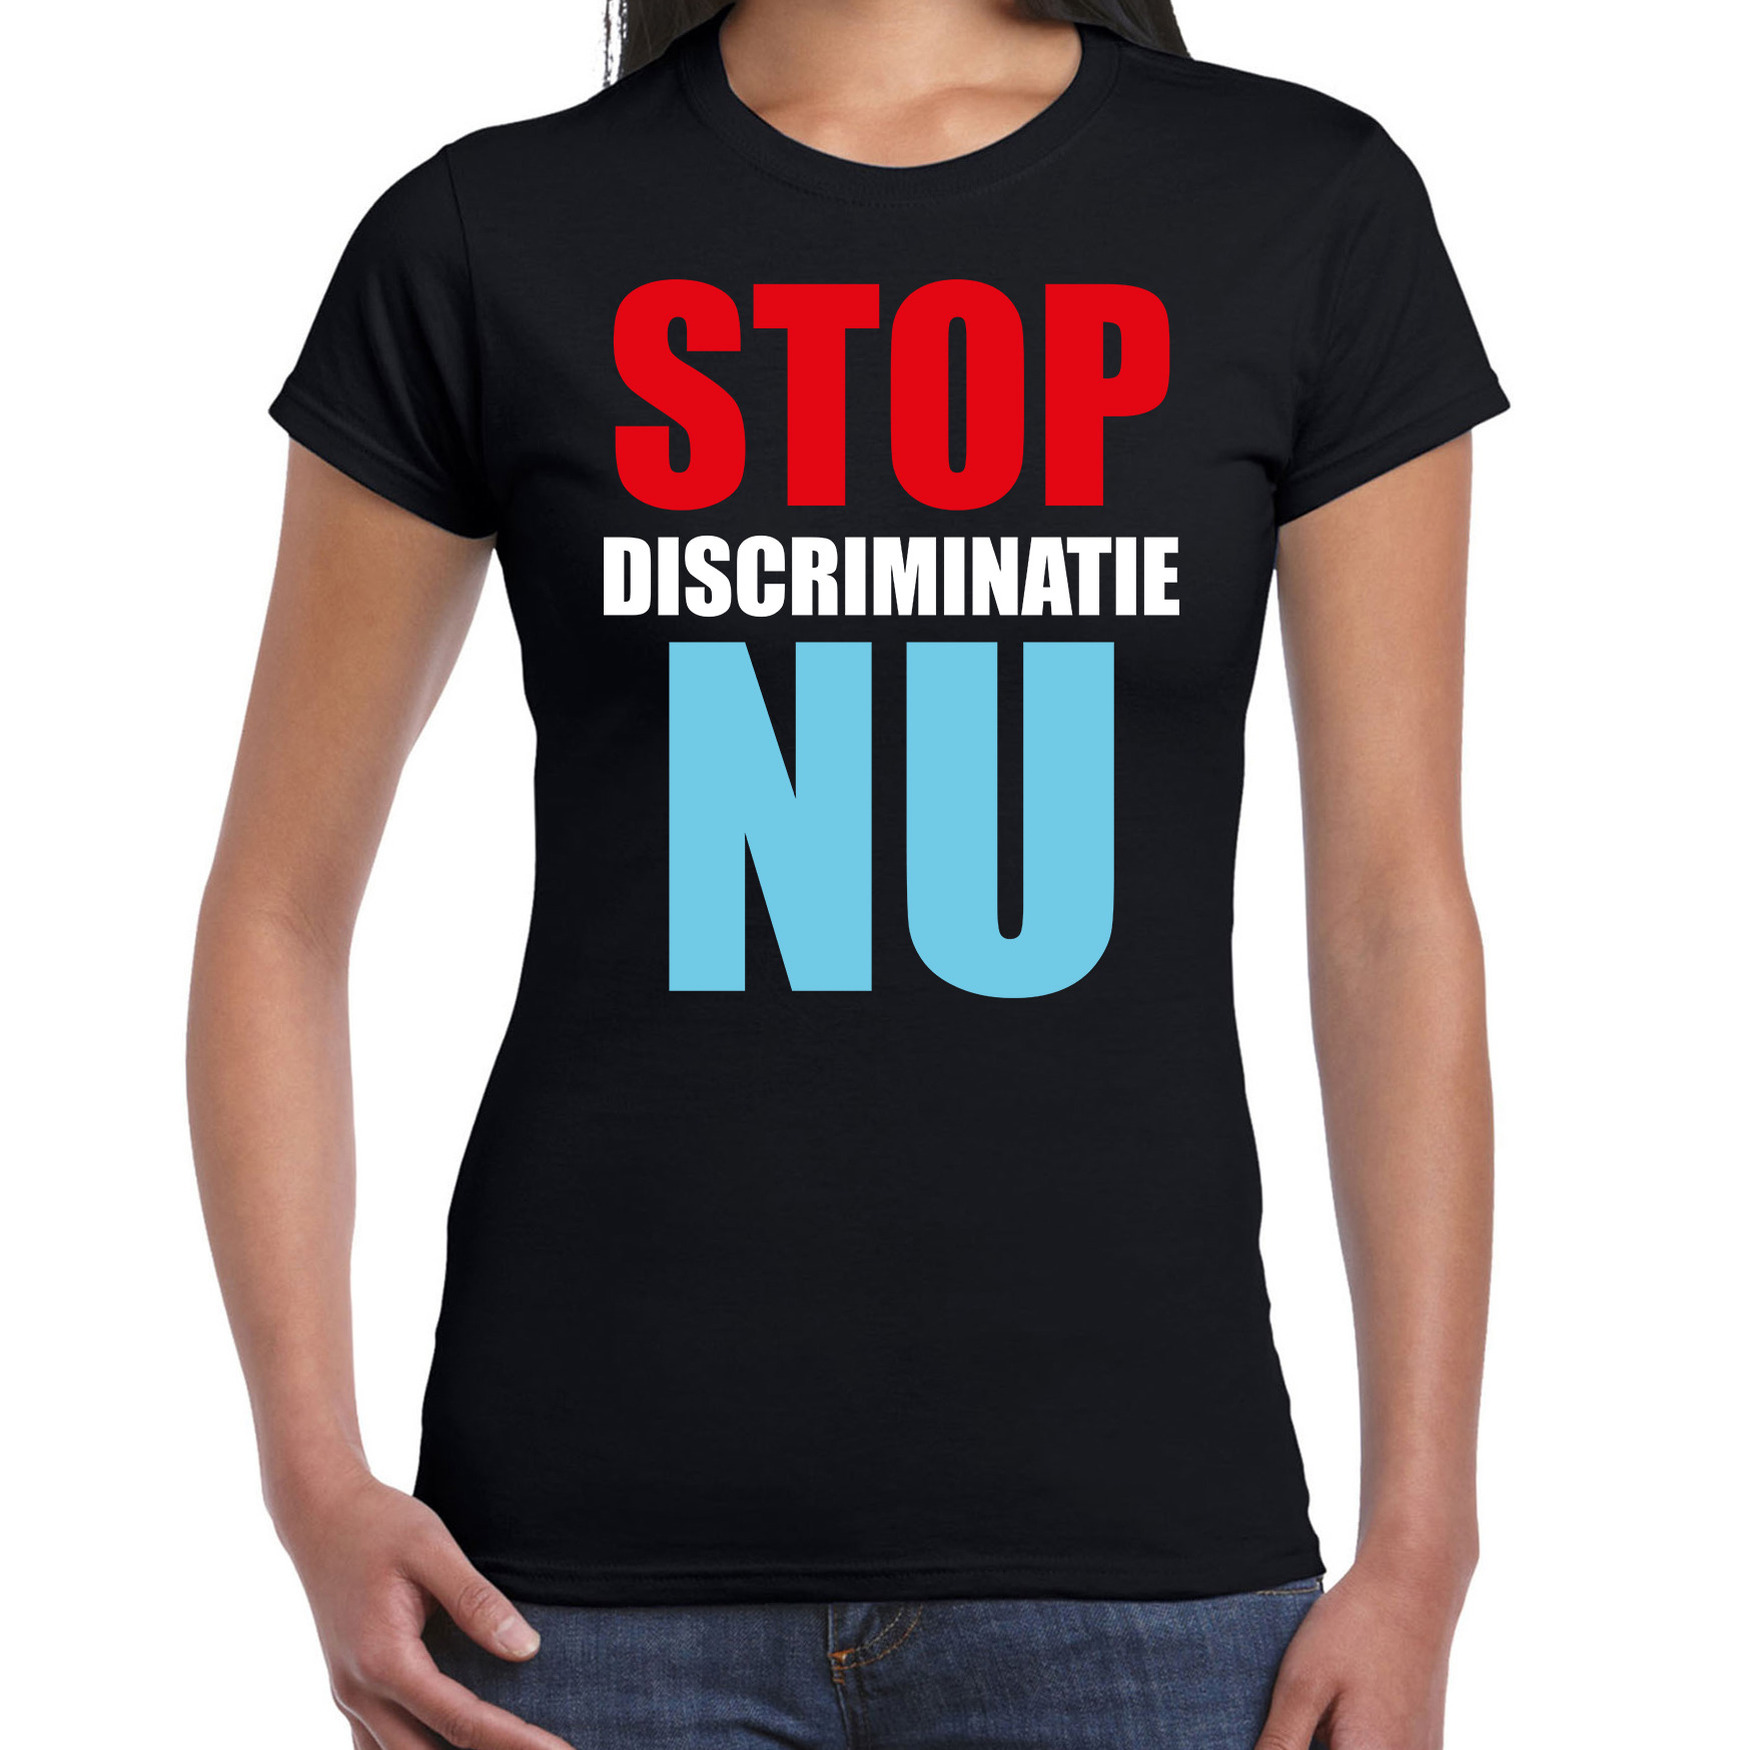 Stop discriminatie NU demonstratie-protest t-shirt zwart voor dames